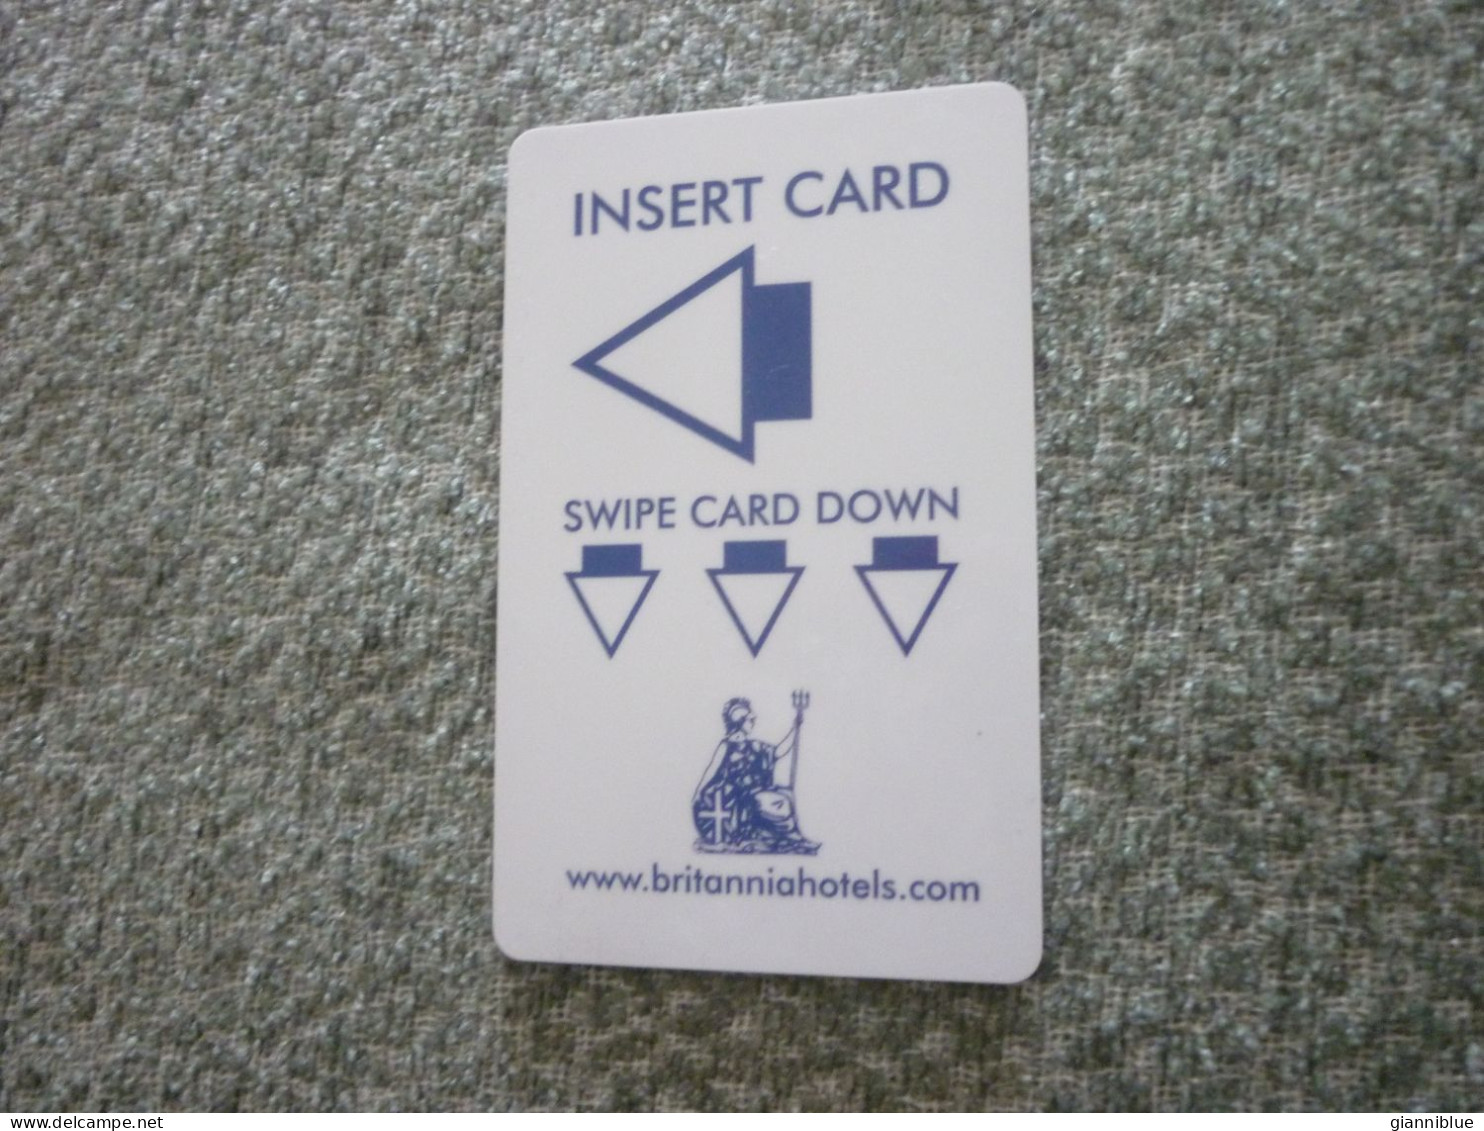 United Kingdom U.K. UK Britannia Hotel Room Key Card - Hotel Keycards